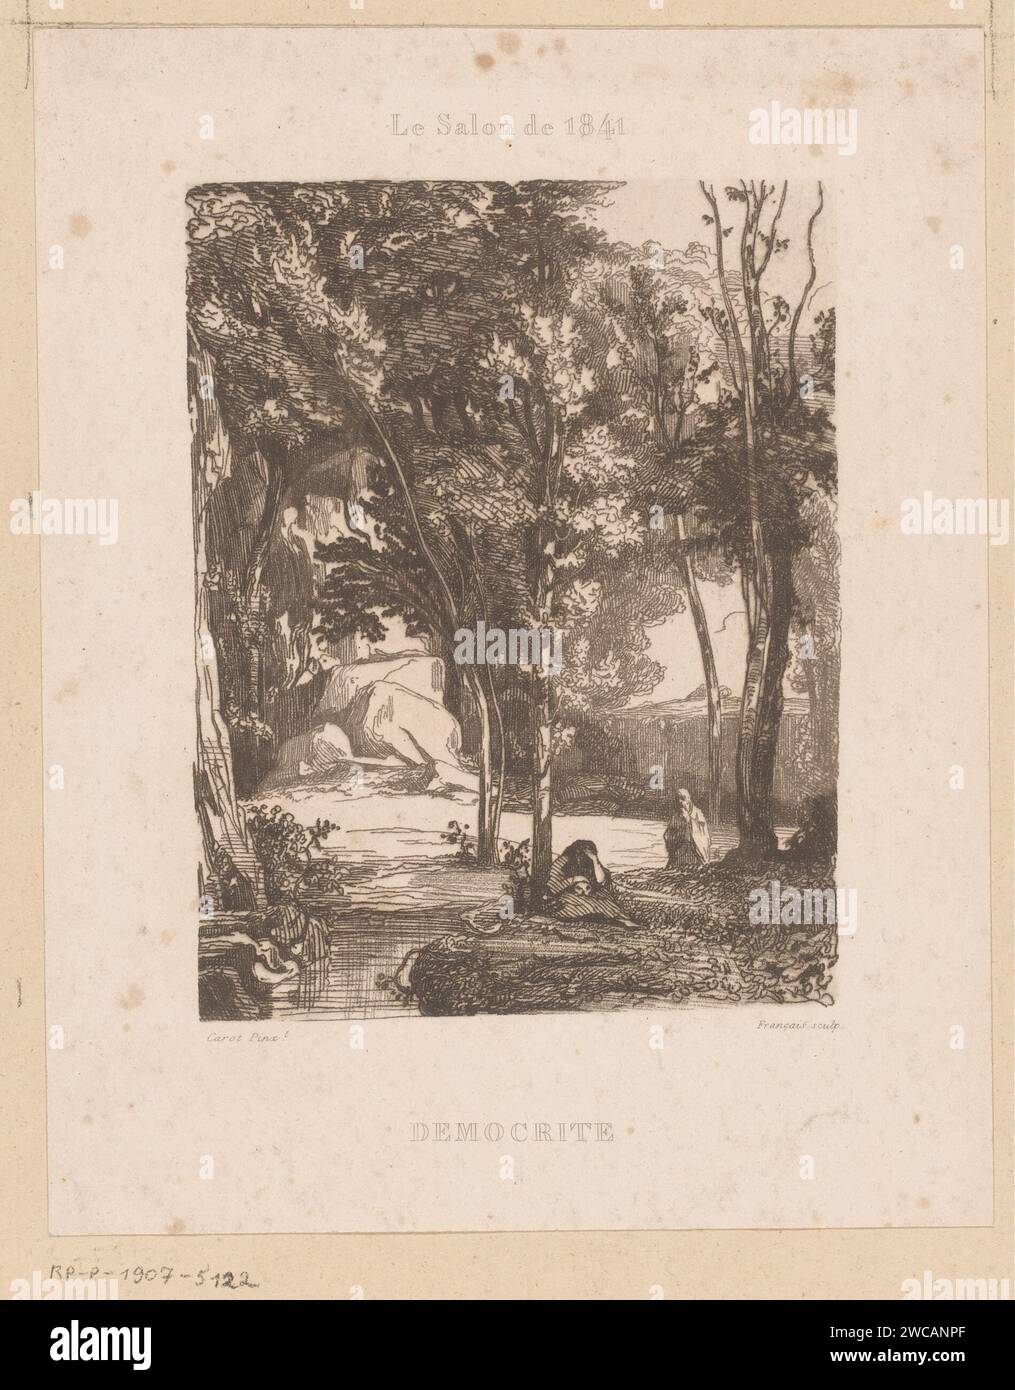 Landschaft mit Figuren auf dem Wasser, Francois-Louis Francais, nach Carot, 1843 Druck Frankreich Papier Wasserlauf Stockfoto